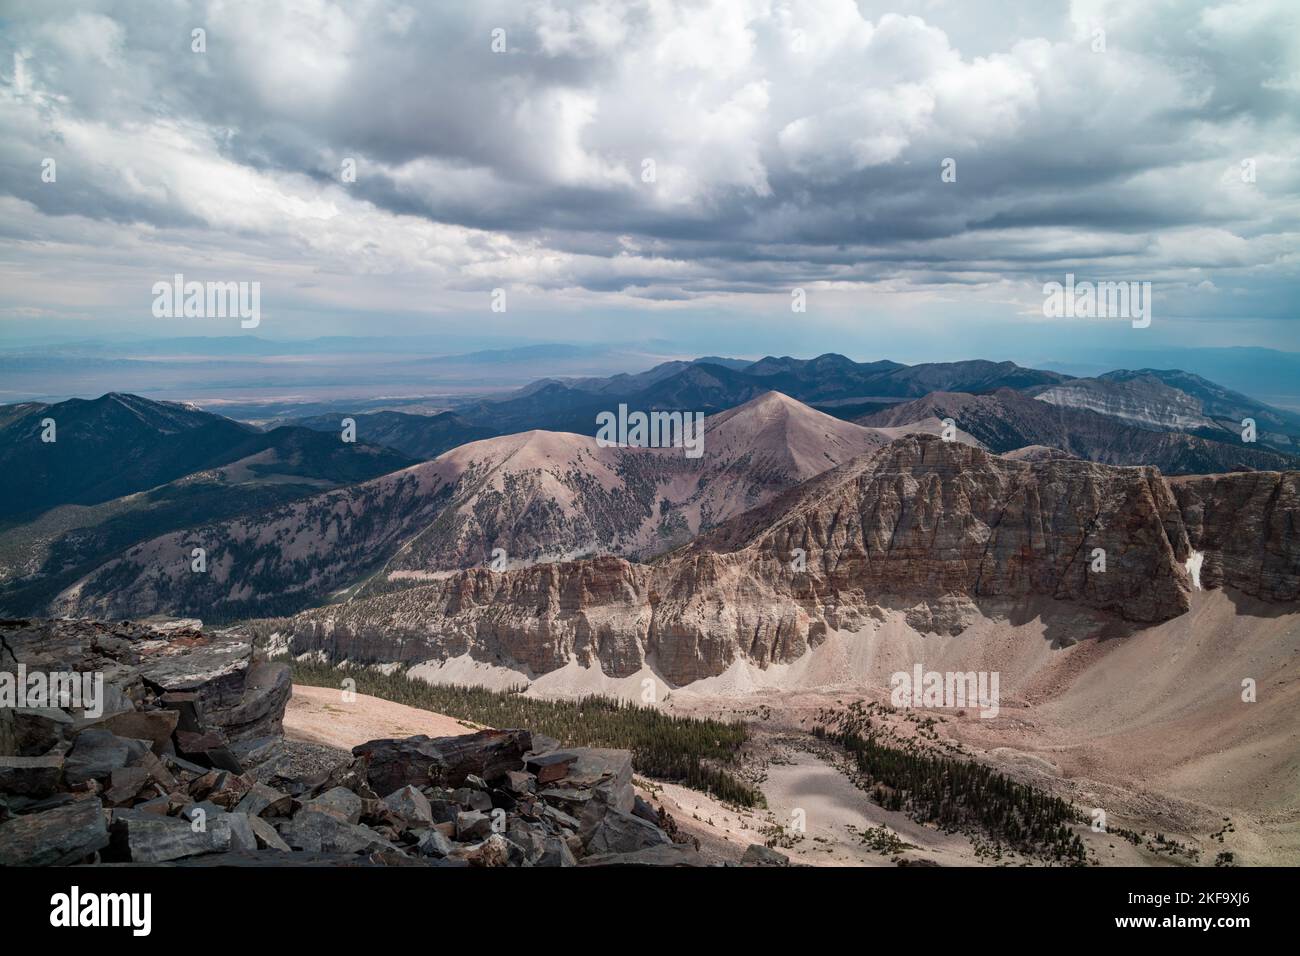 La cordillera de Snake Mountain en Nevada vista hacia el sur desde la cumbre de Wheeler Peak en el Parque Nacional Great Basin. Nubes tormentosas están en el cielo encendido Foto de stock